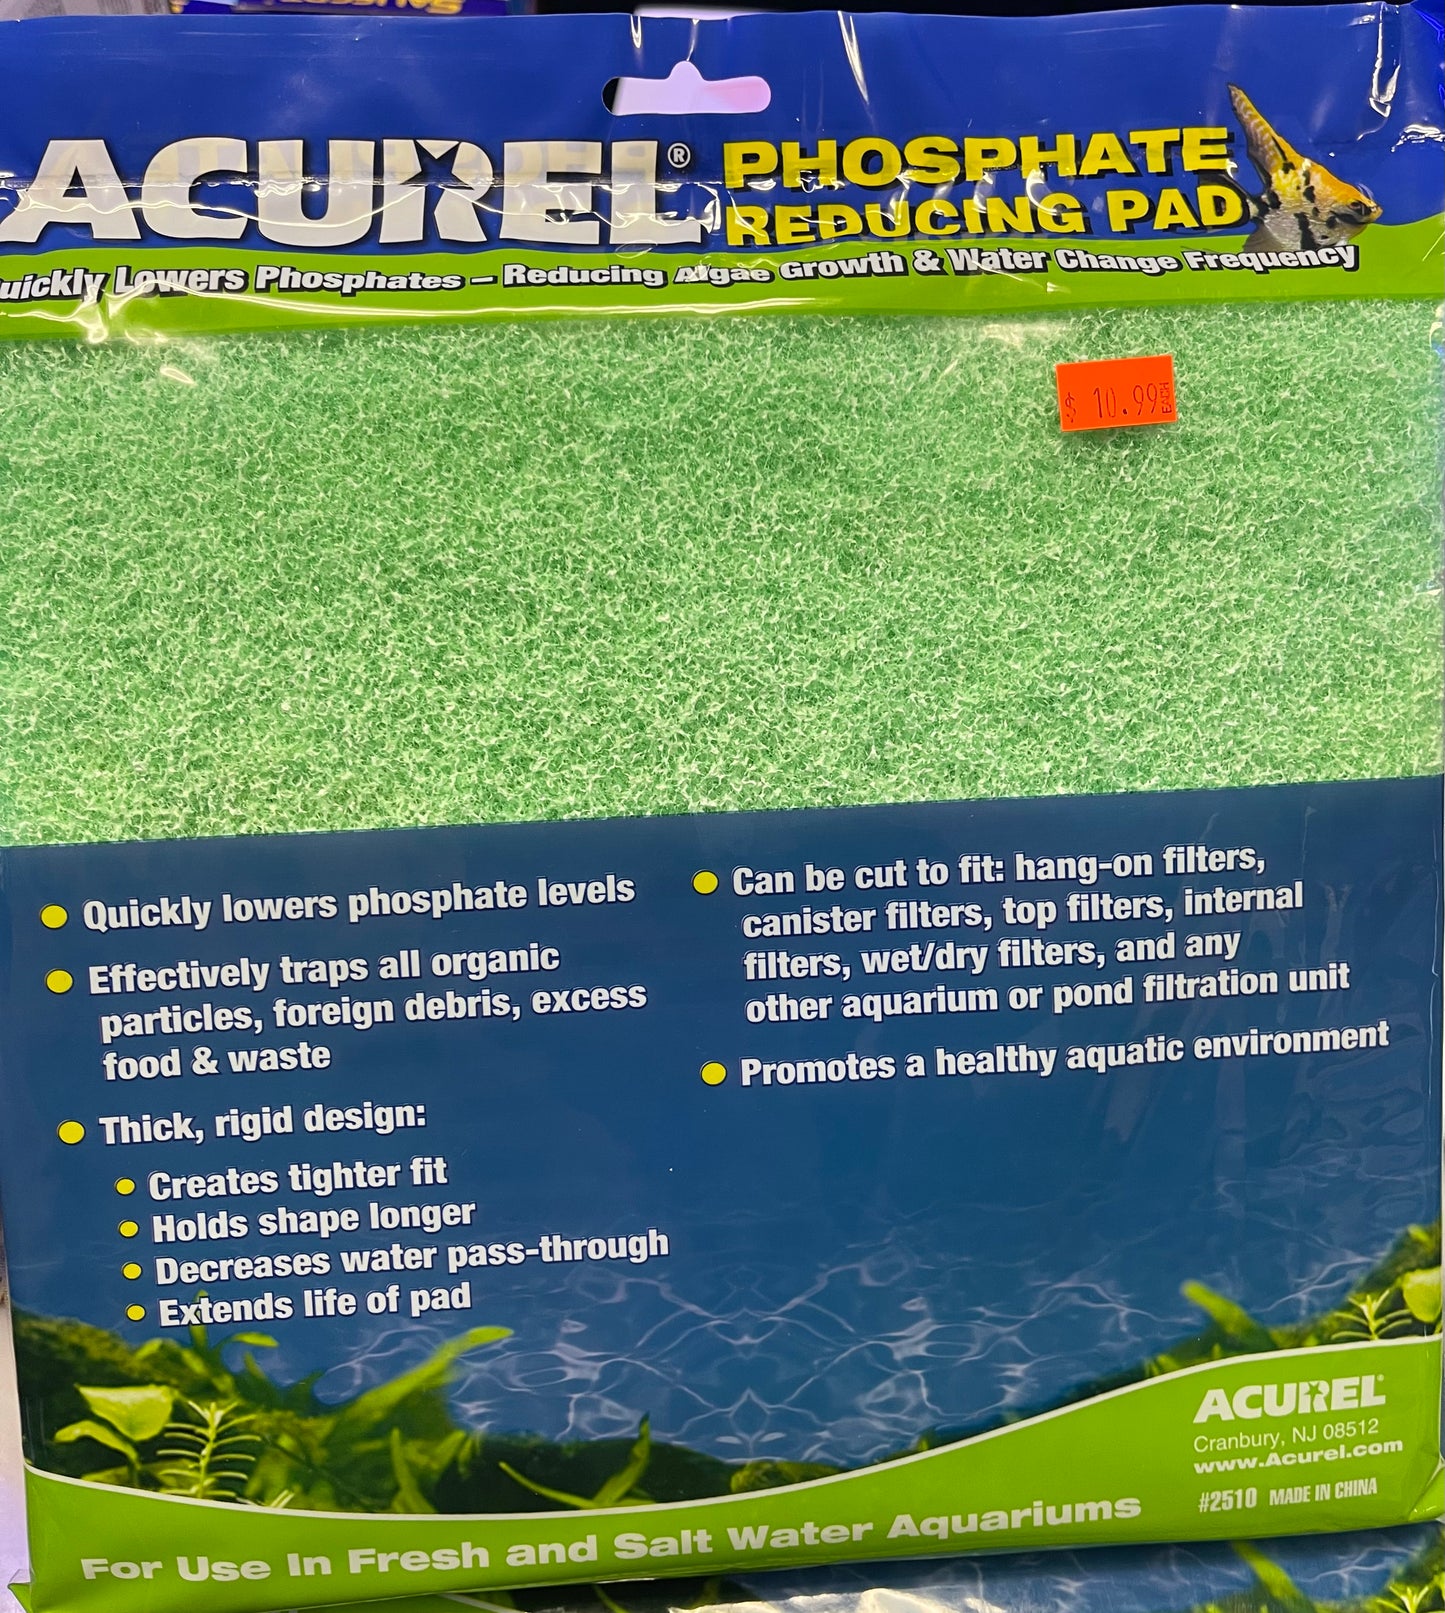 Acurel Phosphate Reducing Pad